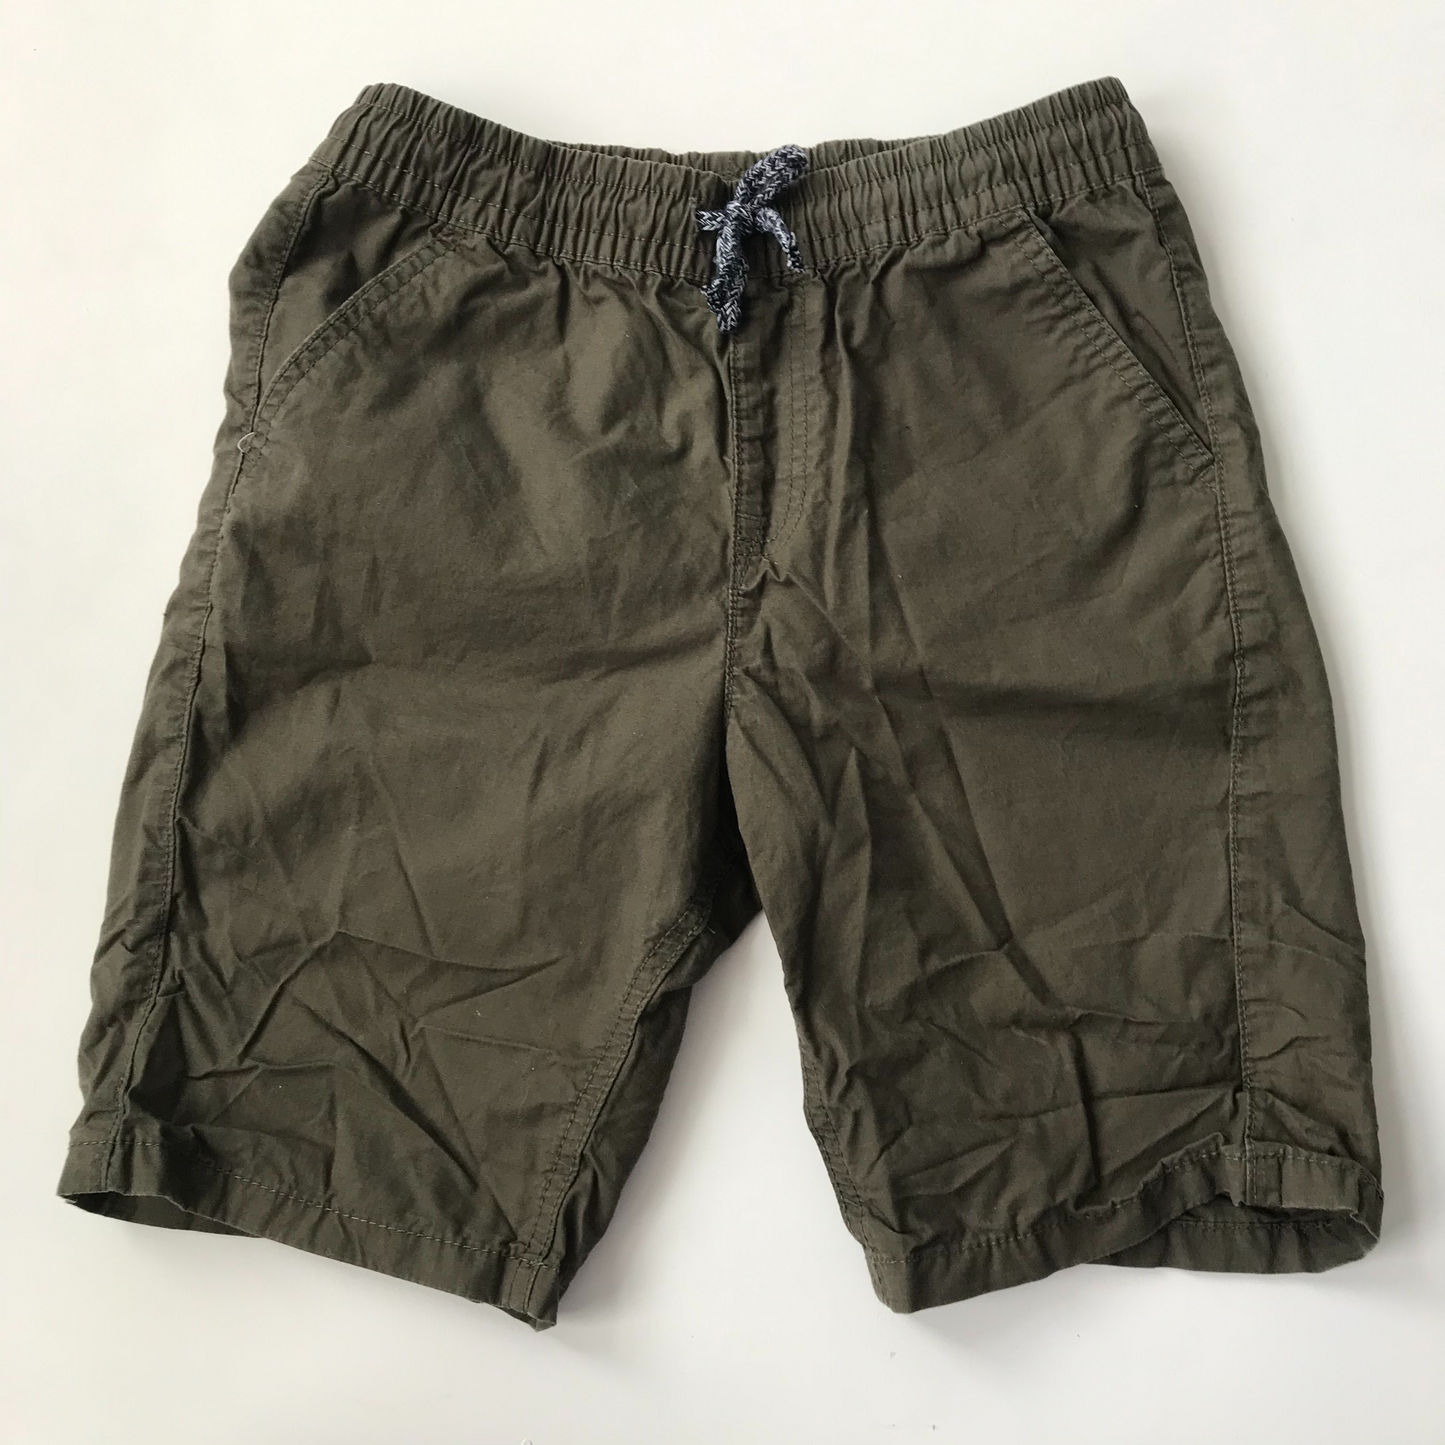 Shorts - Green - Age 11